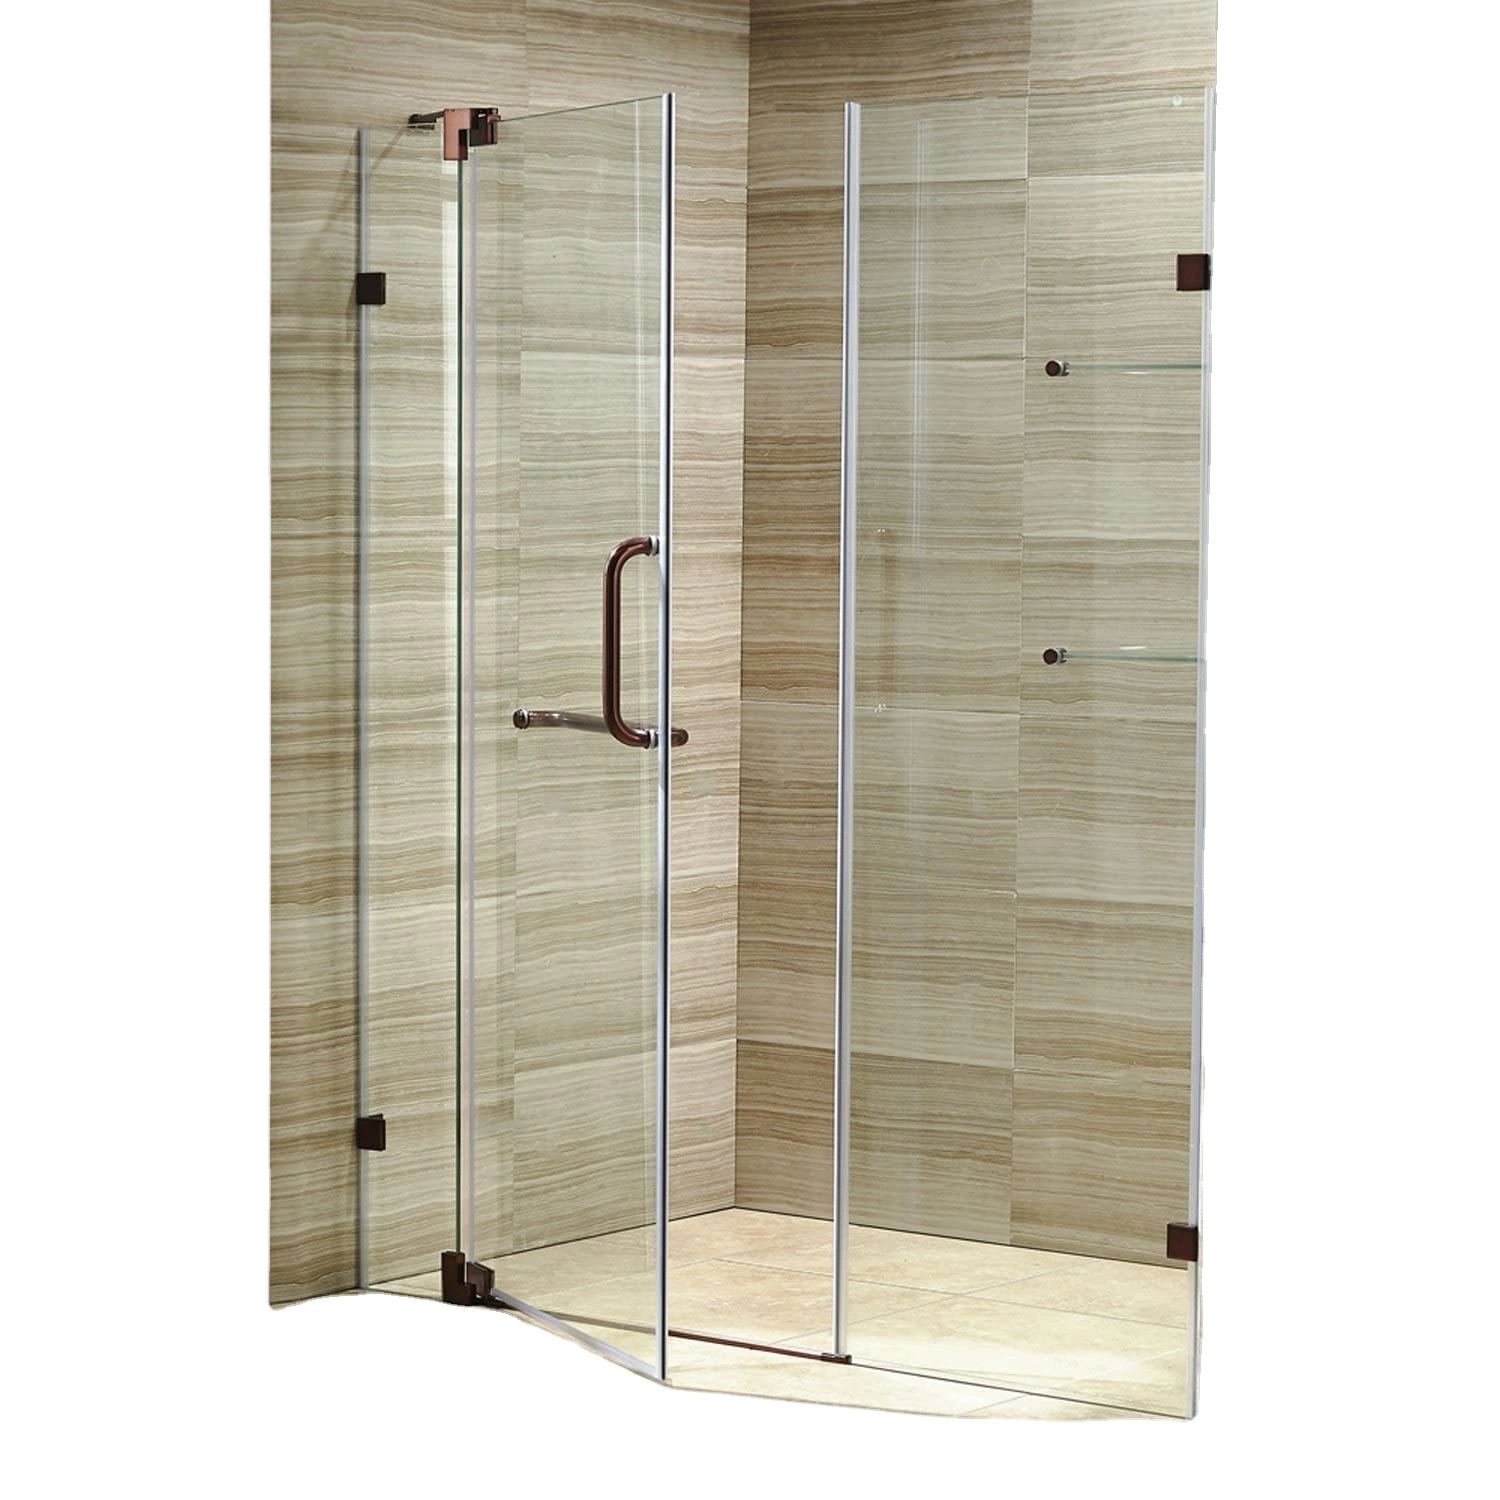 Ванная комната индивидуальные складные двери из закаленного стекла корпус заводская цена душевая с низким уровнем